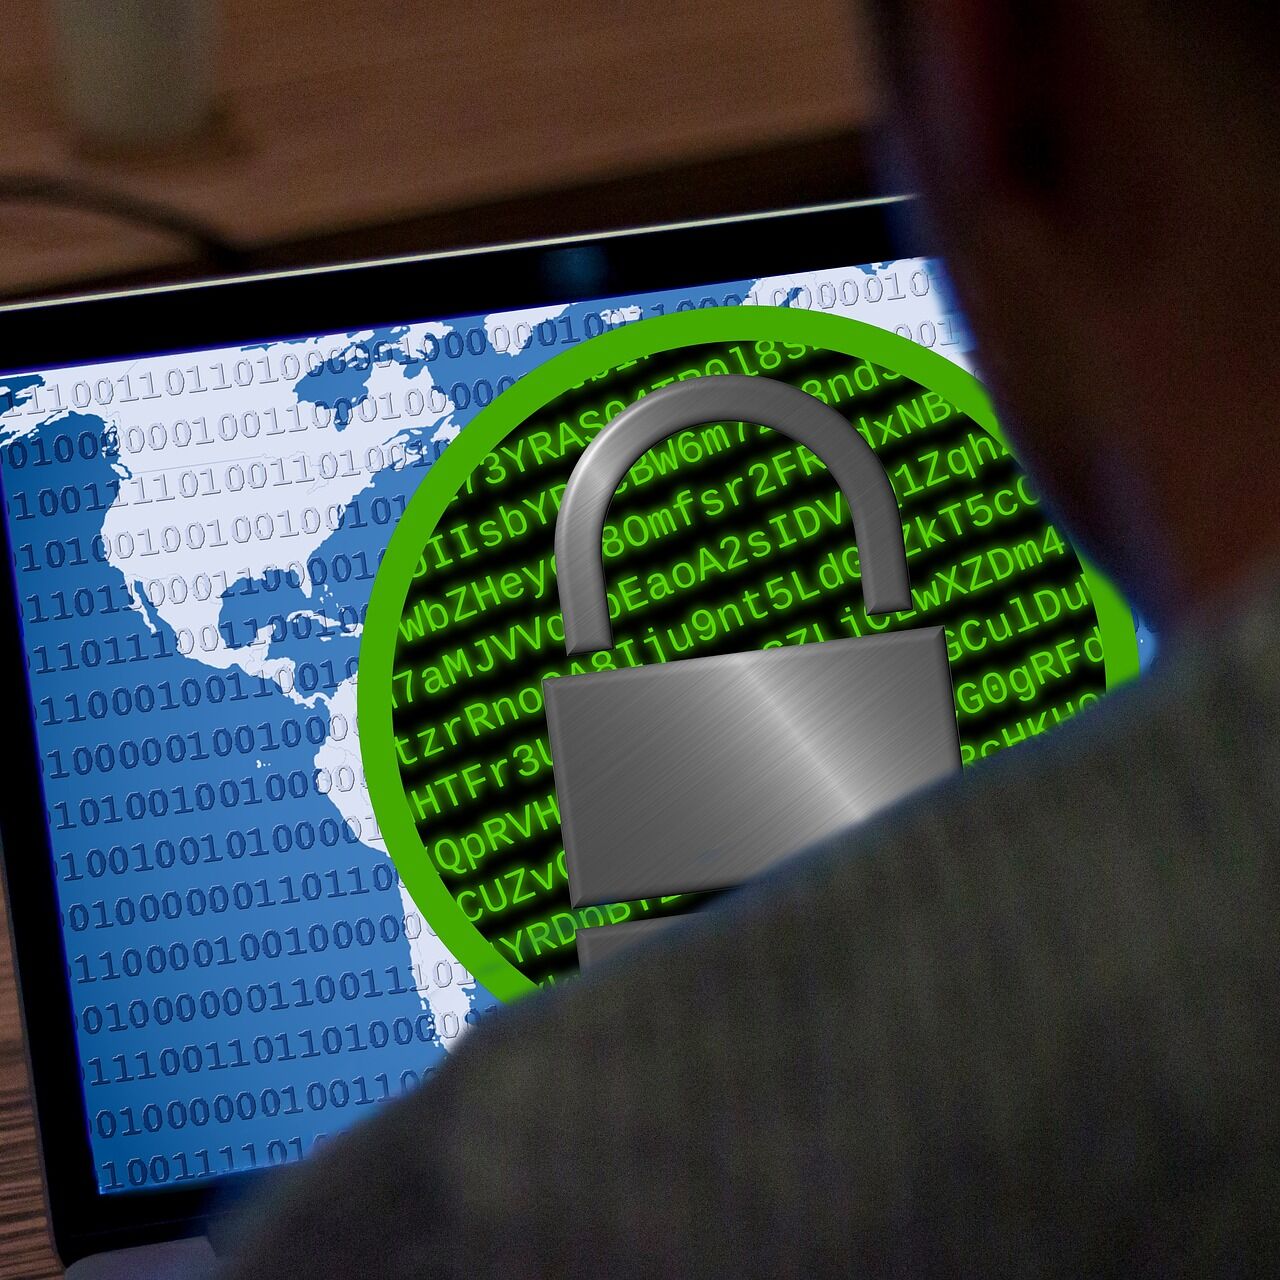 Durante los ataques de ransomware, los delincuentes exigen que se pague un rescate para eliminar la limitación